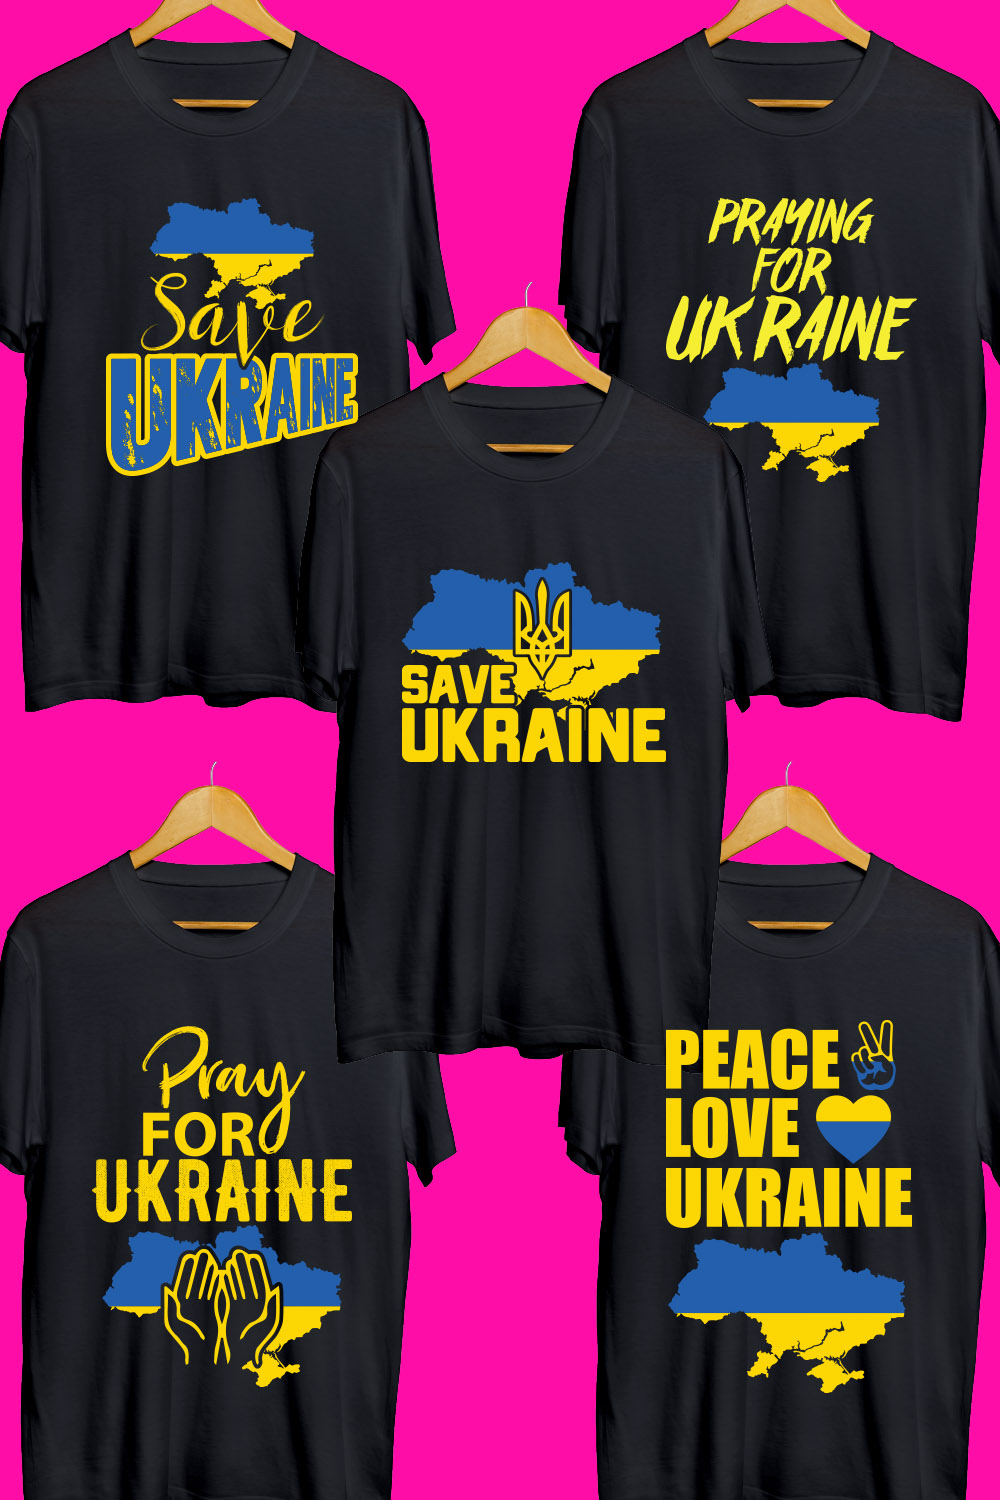 Ukraine SVG T Shirt Designs Bundle pinterest preview image.